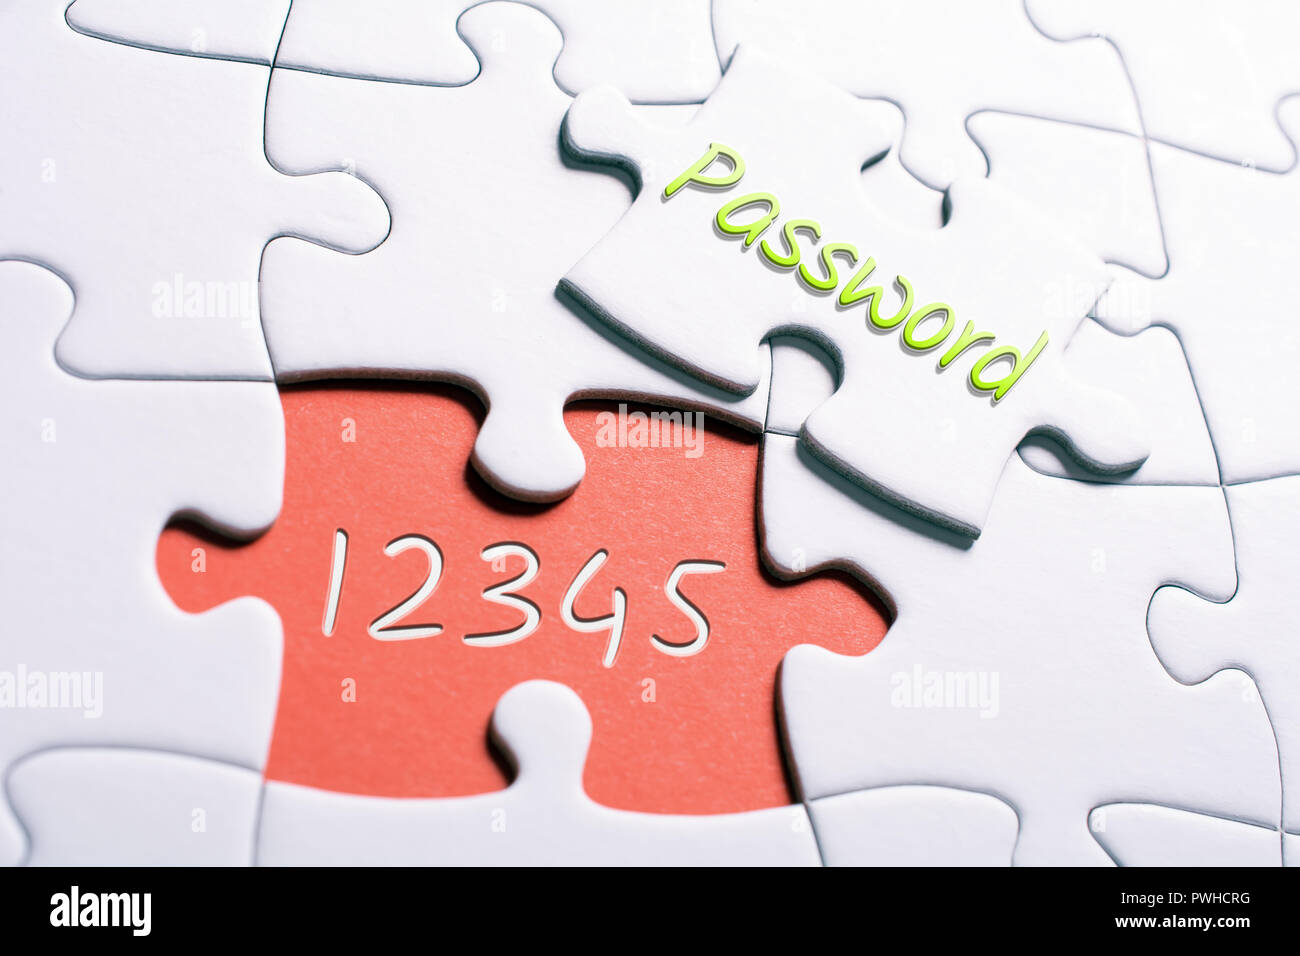 Le mot de passe et les numéros de pièce manquante 12345 Puzzle - Concept de mot de passe non sécurisé Banque D'Images